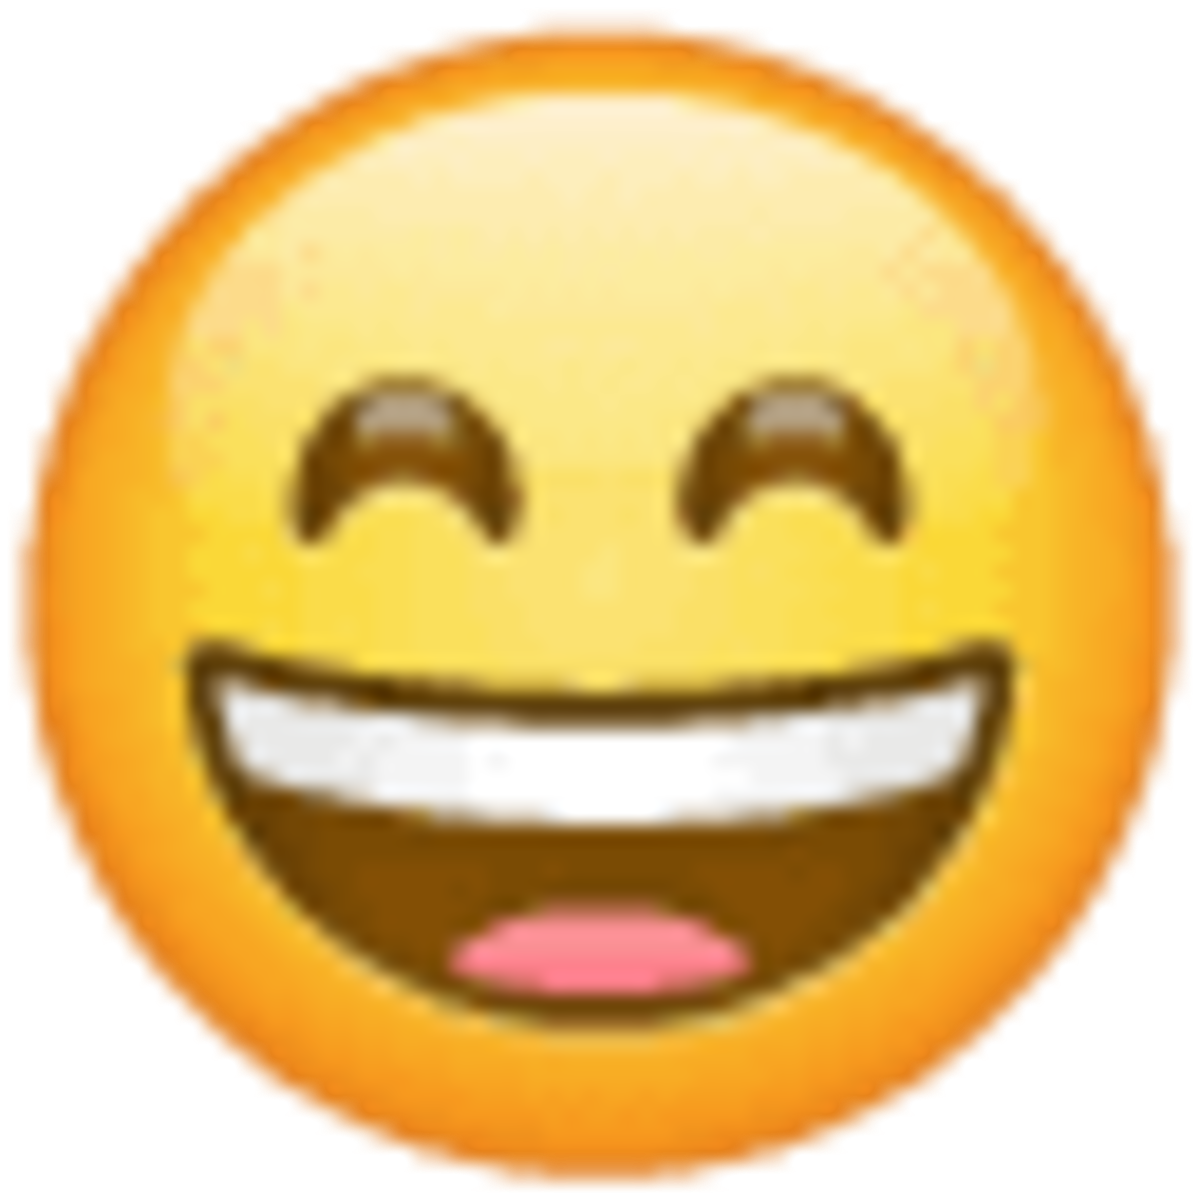 Emoji U+1F604, cara sonriendo con ojos sonrientes